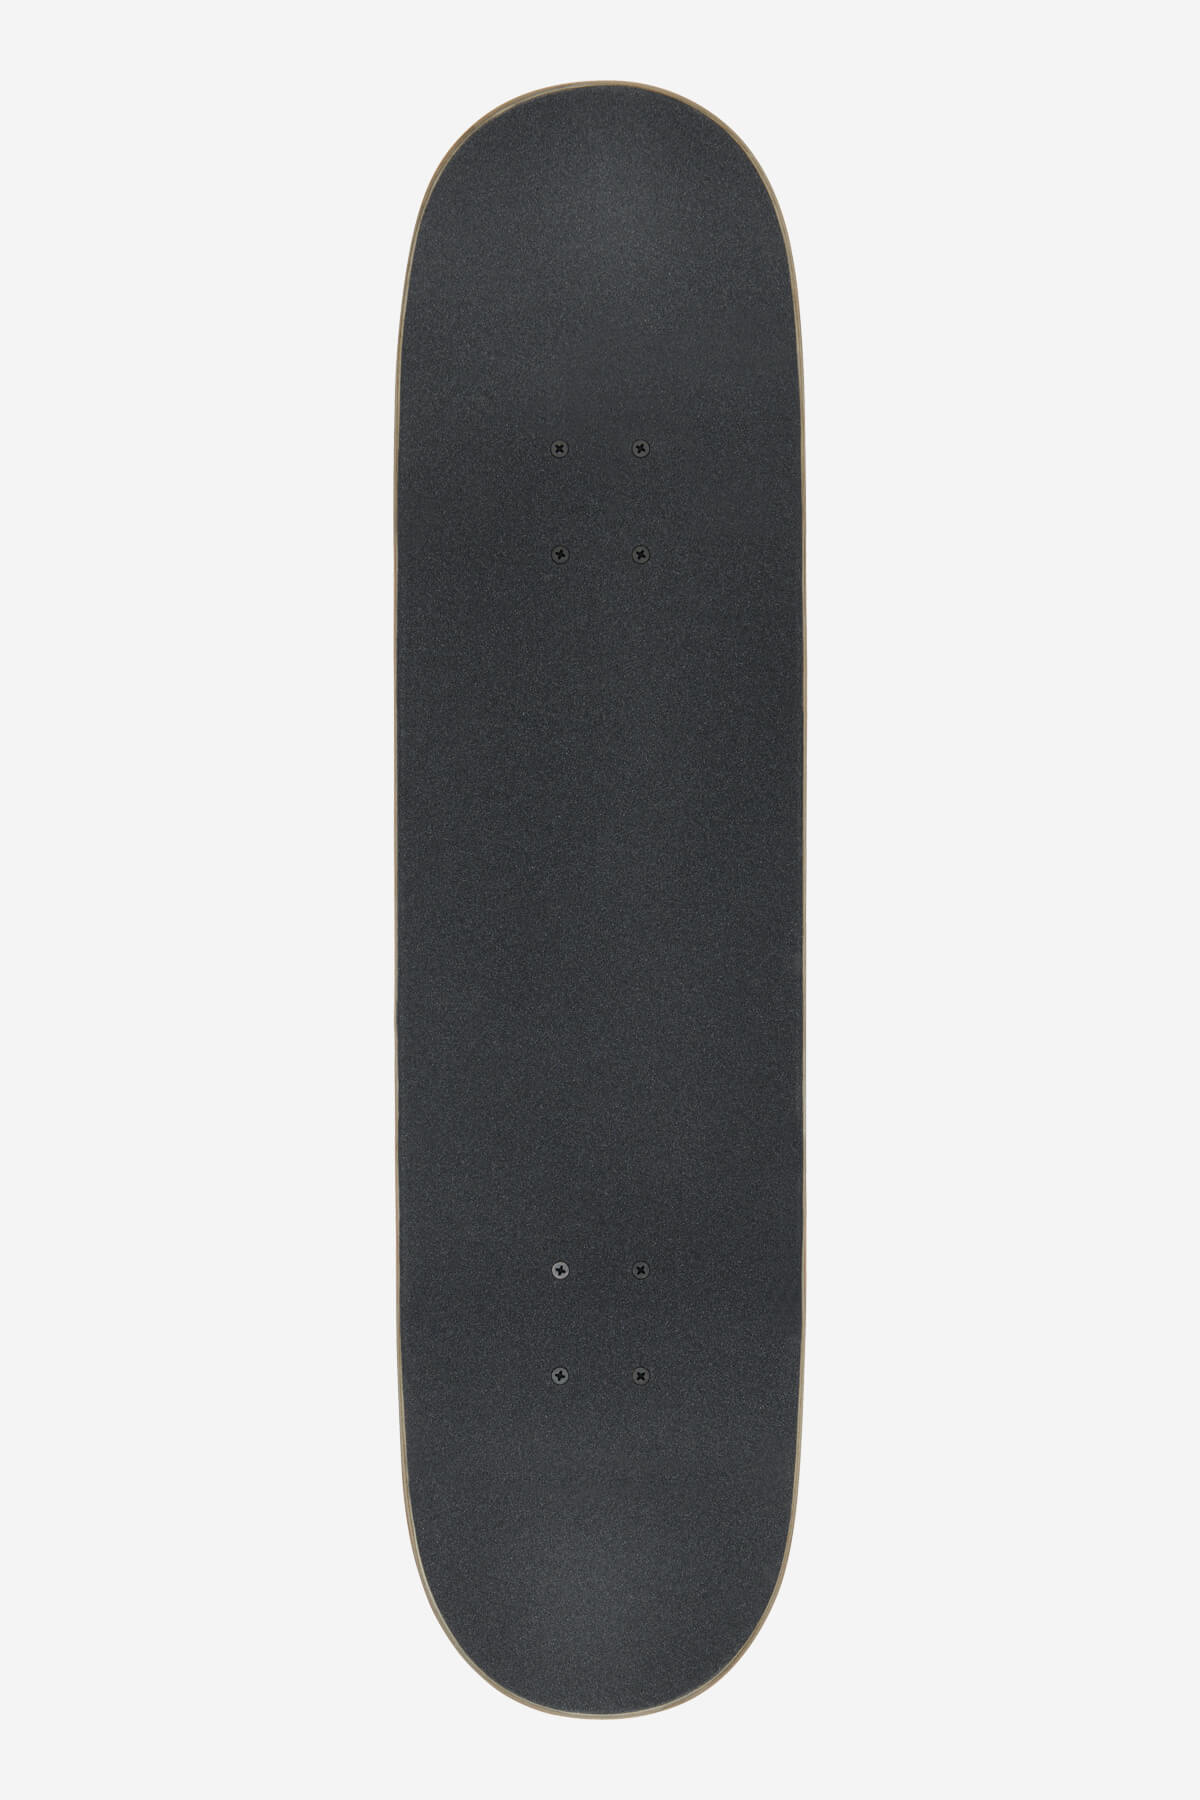 Globe - Goodstock - Gunmetal - 8.25" Complete Skateboard